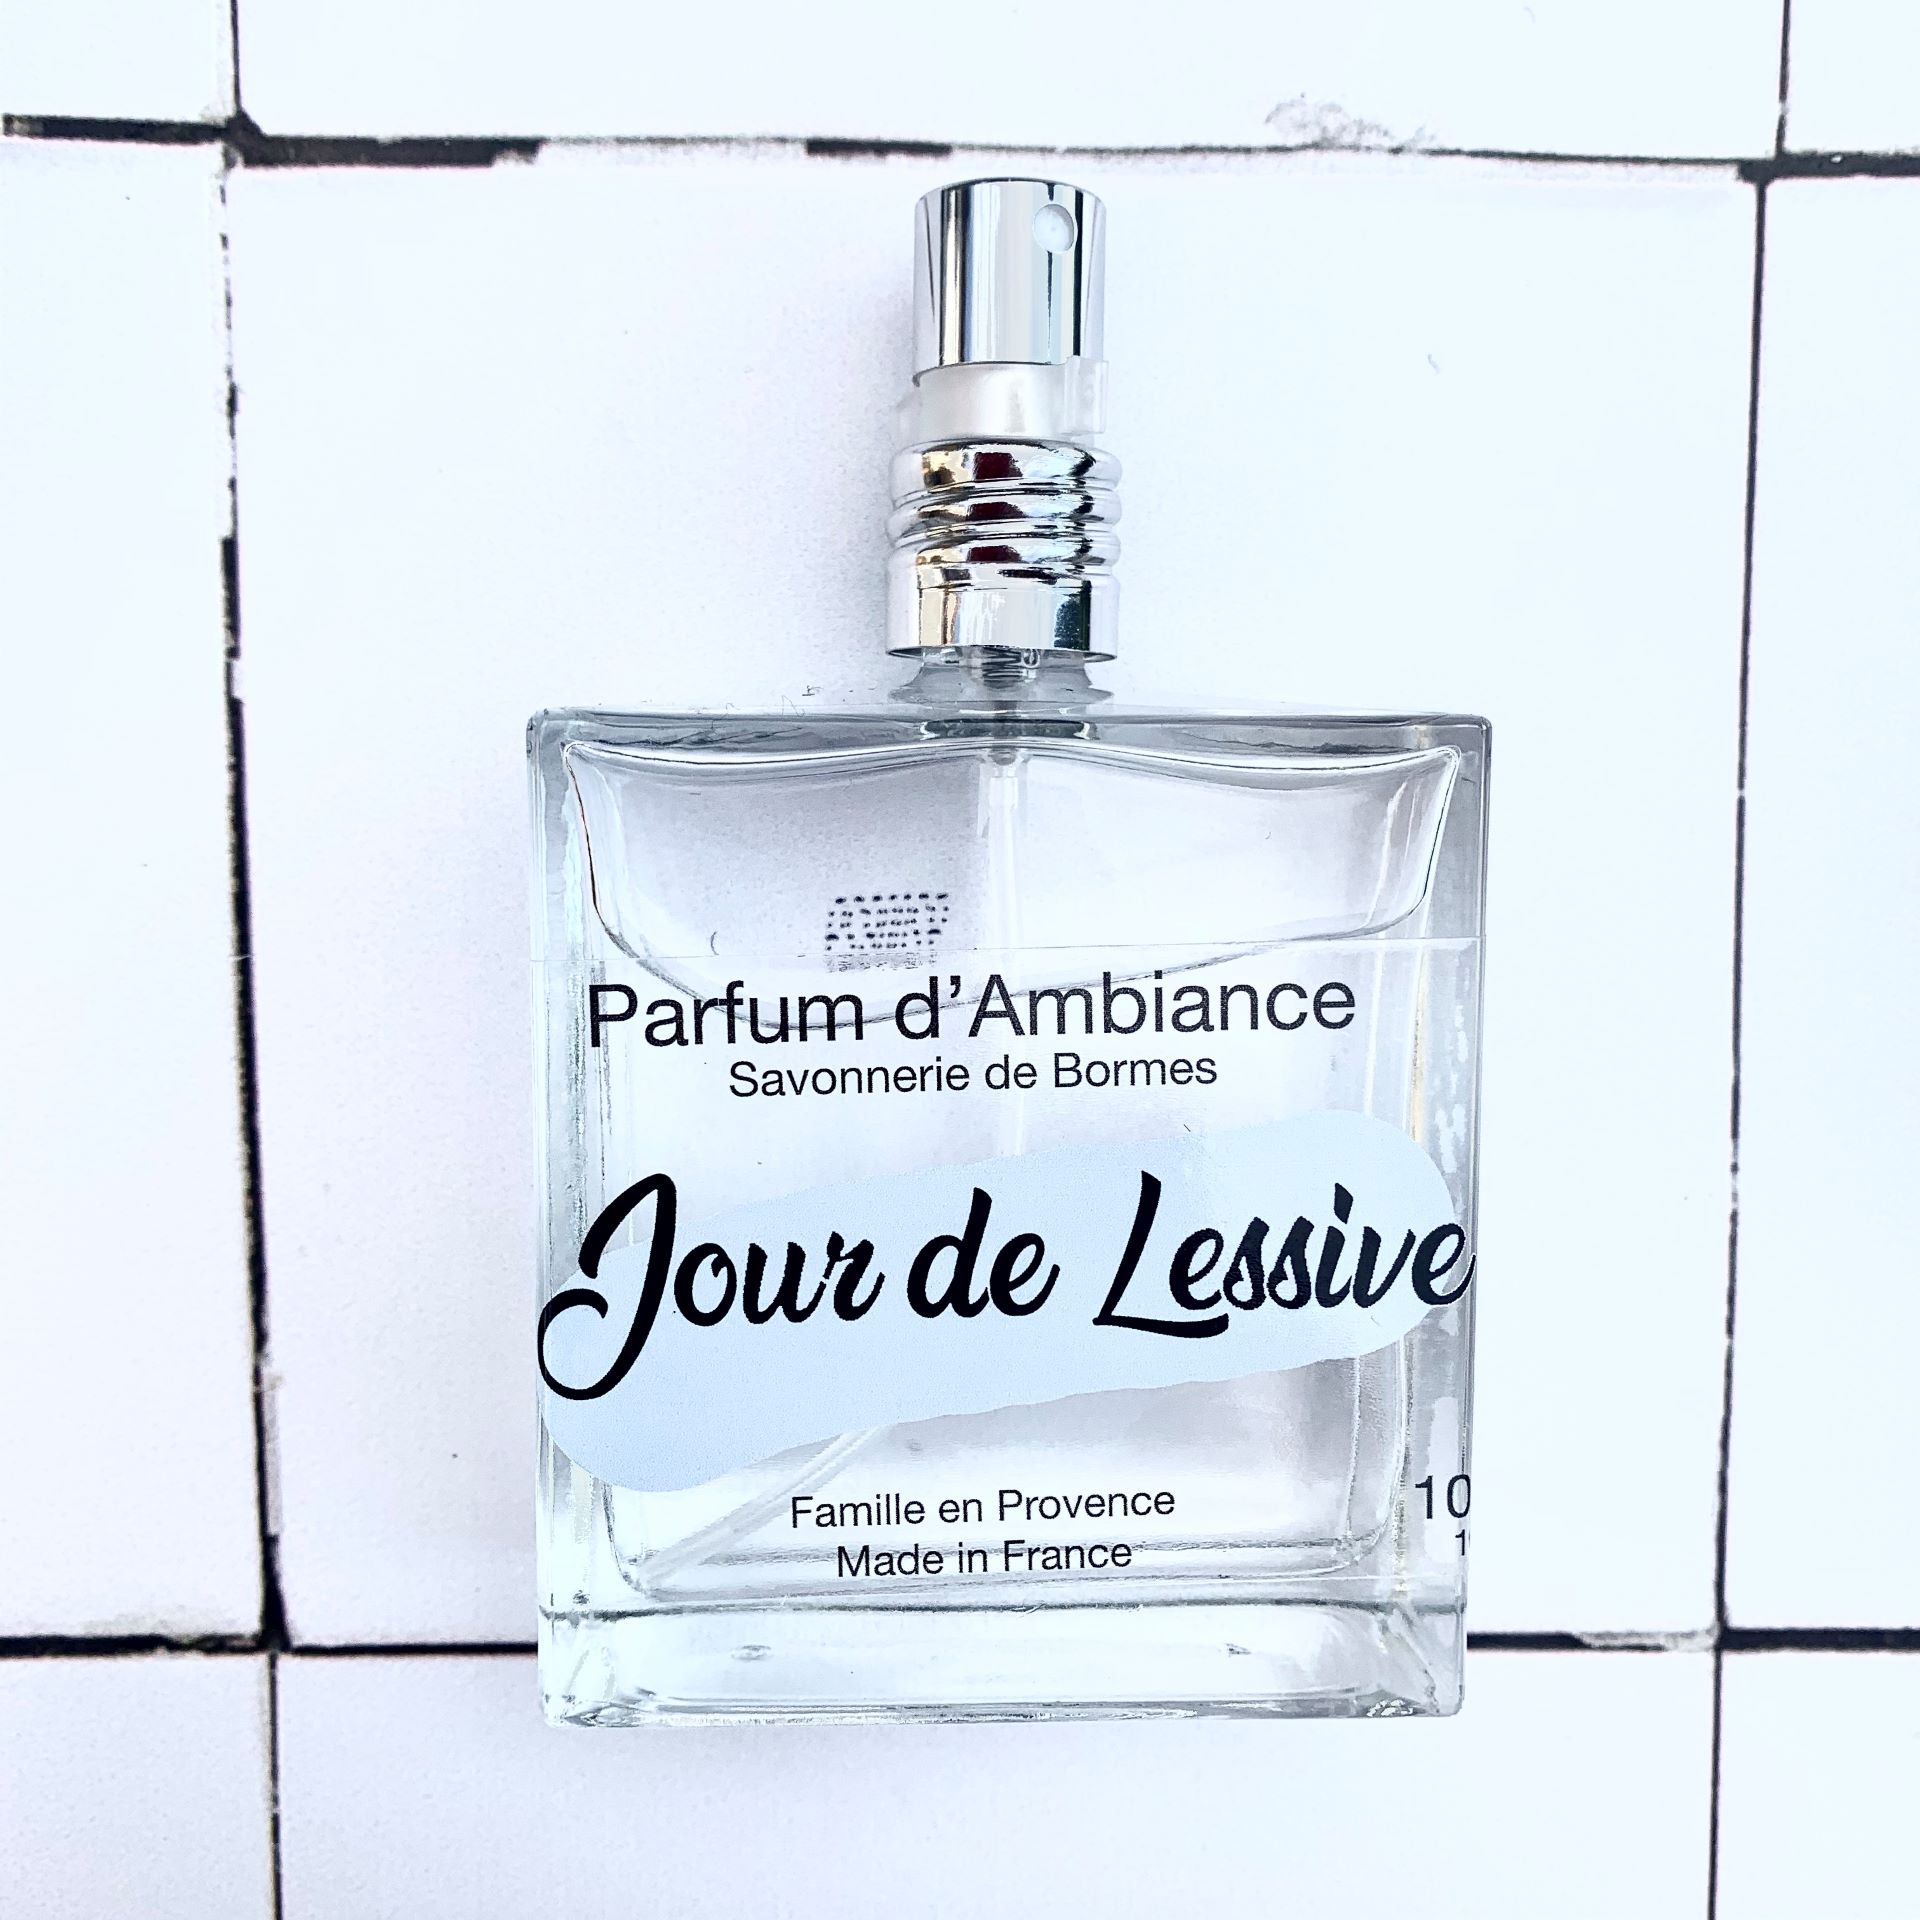 Parfum d'ambiance 100 ml JOUR DE LESSIVE - Savonnerie de Bormes